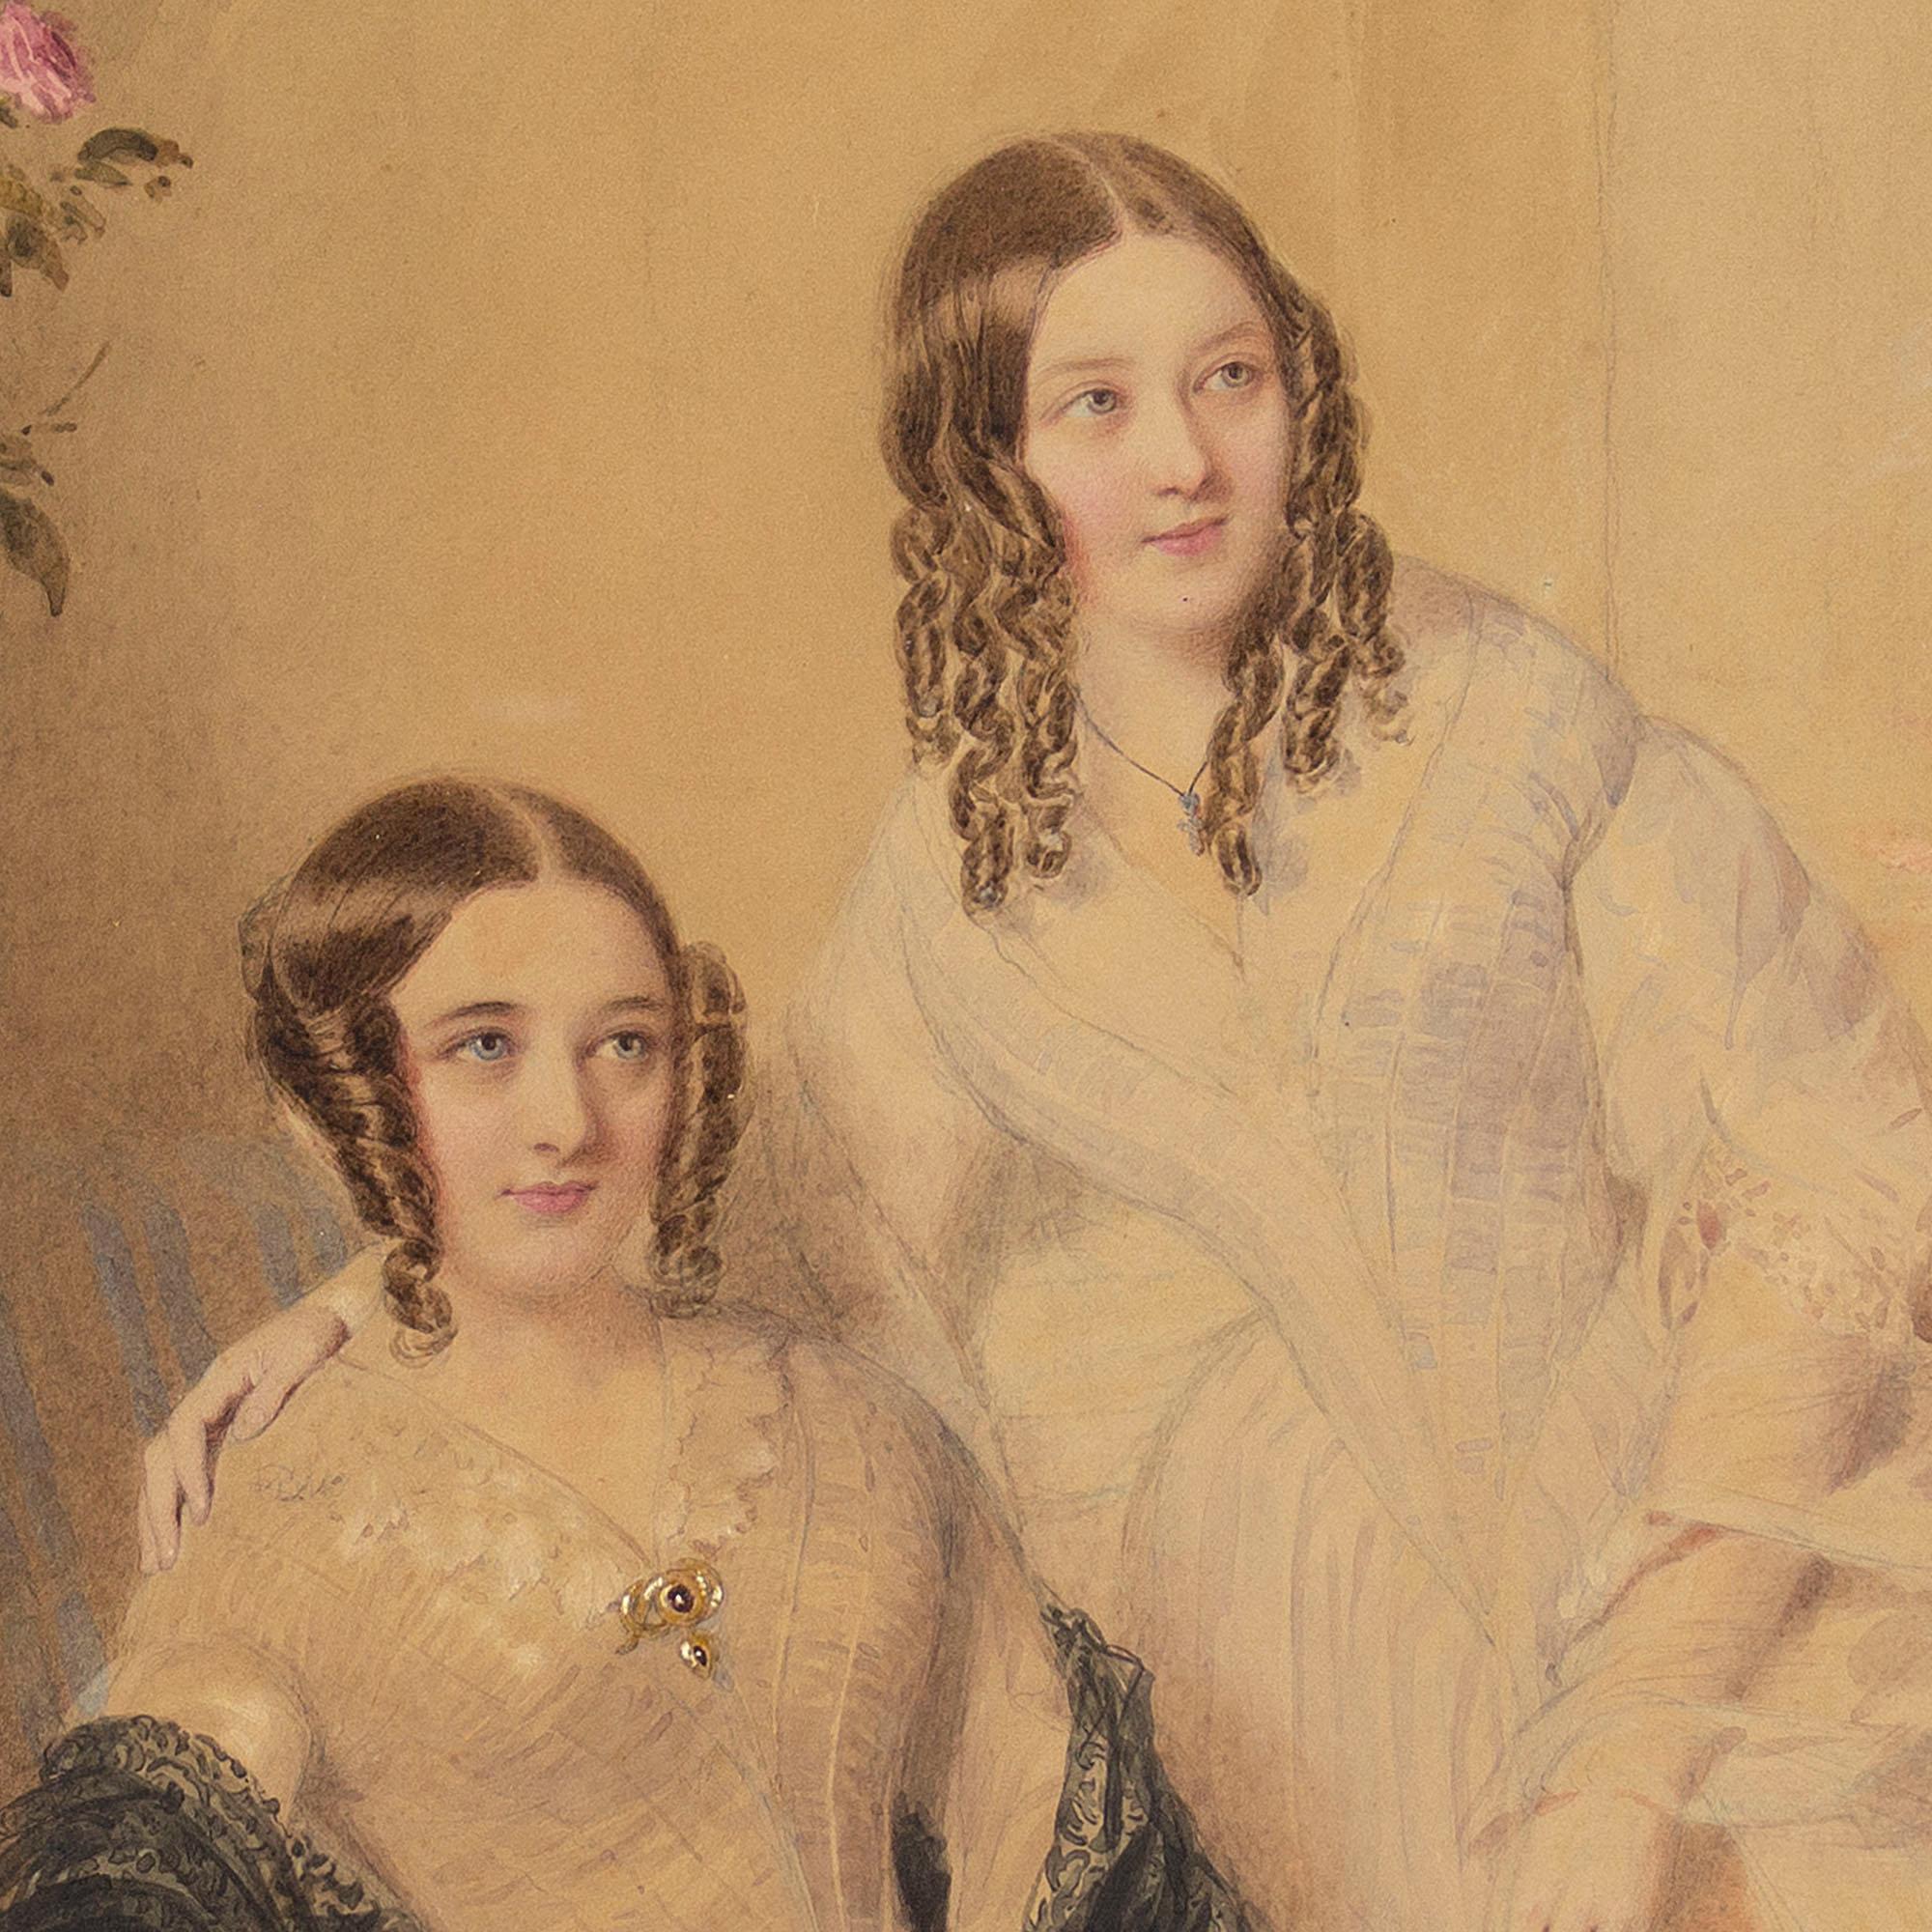 Dieses schöne Porträt des britischen Künstlers William Drummond (ca. 1800-1860) zeigt zwei Schwestern in einem Interieur. Es ist ein charmanter Einblick in das Leben dieser jungen Frauen.

Gekleidet in die neueste Mode der 1860er Jahre, die Haare